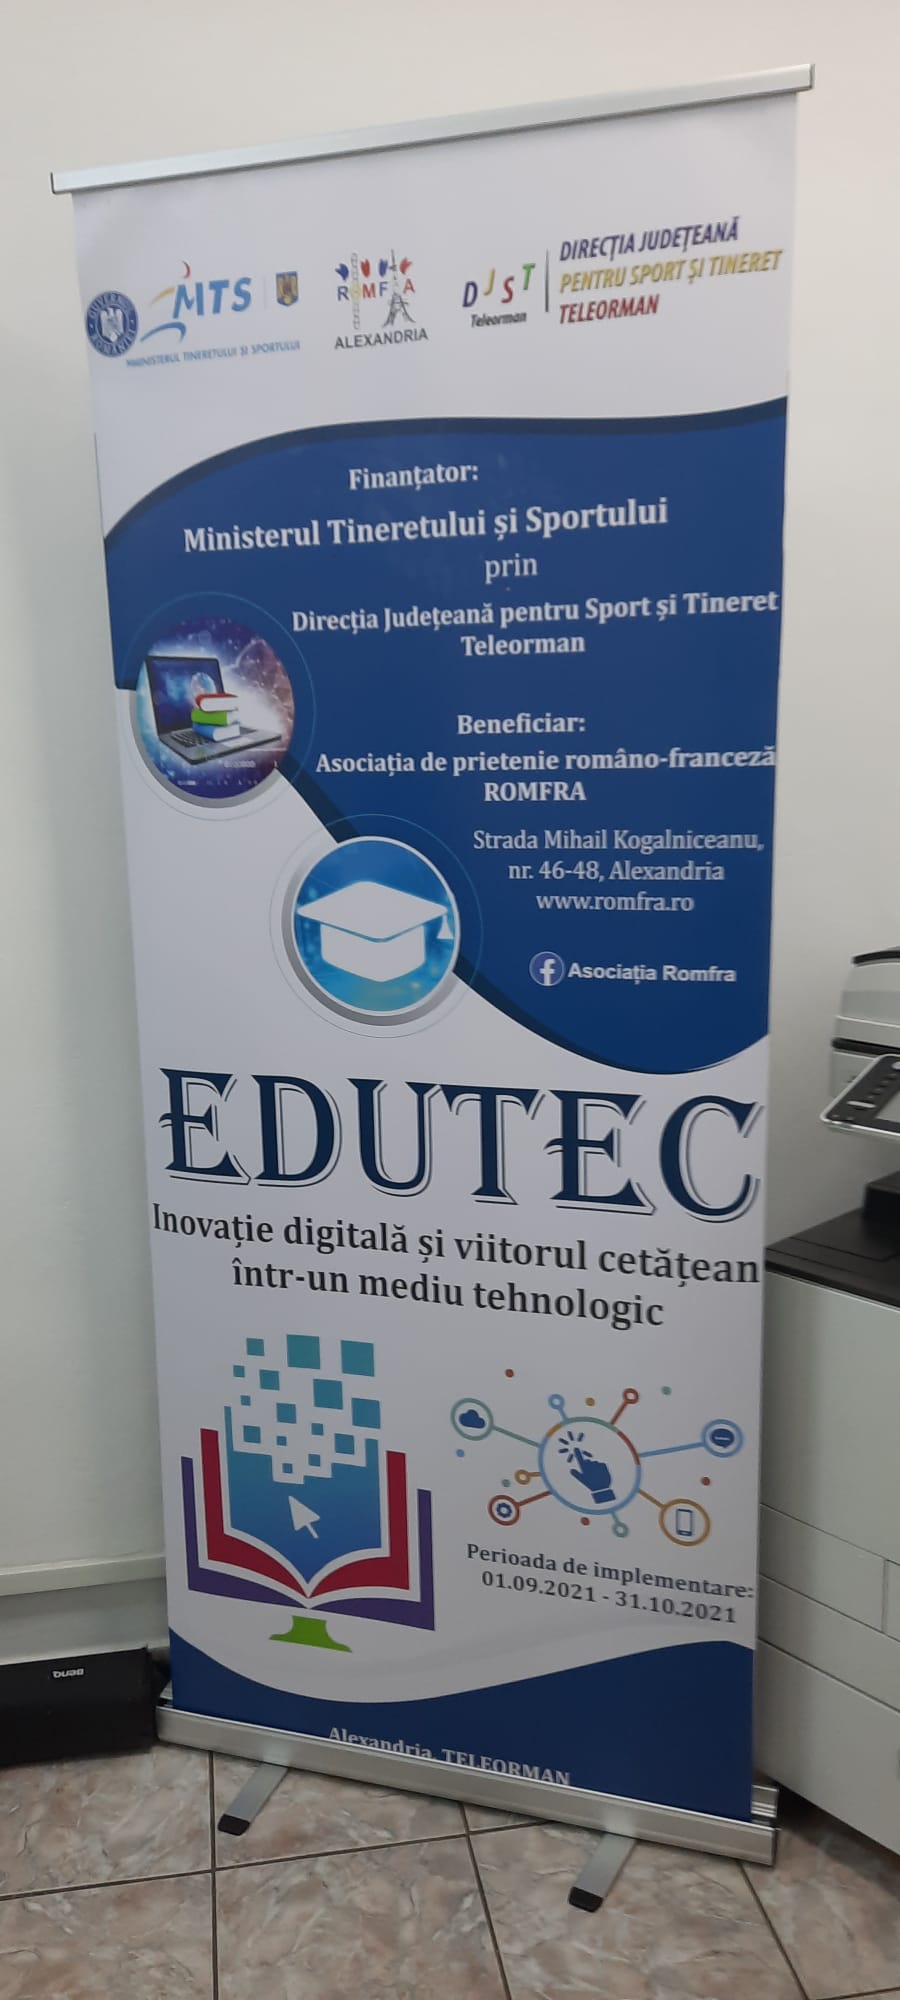 EDUTEC – Inovaţie digitală şi viitorul cetăţean într-un mediu tehnologic